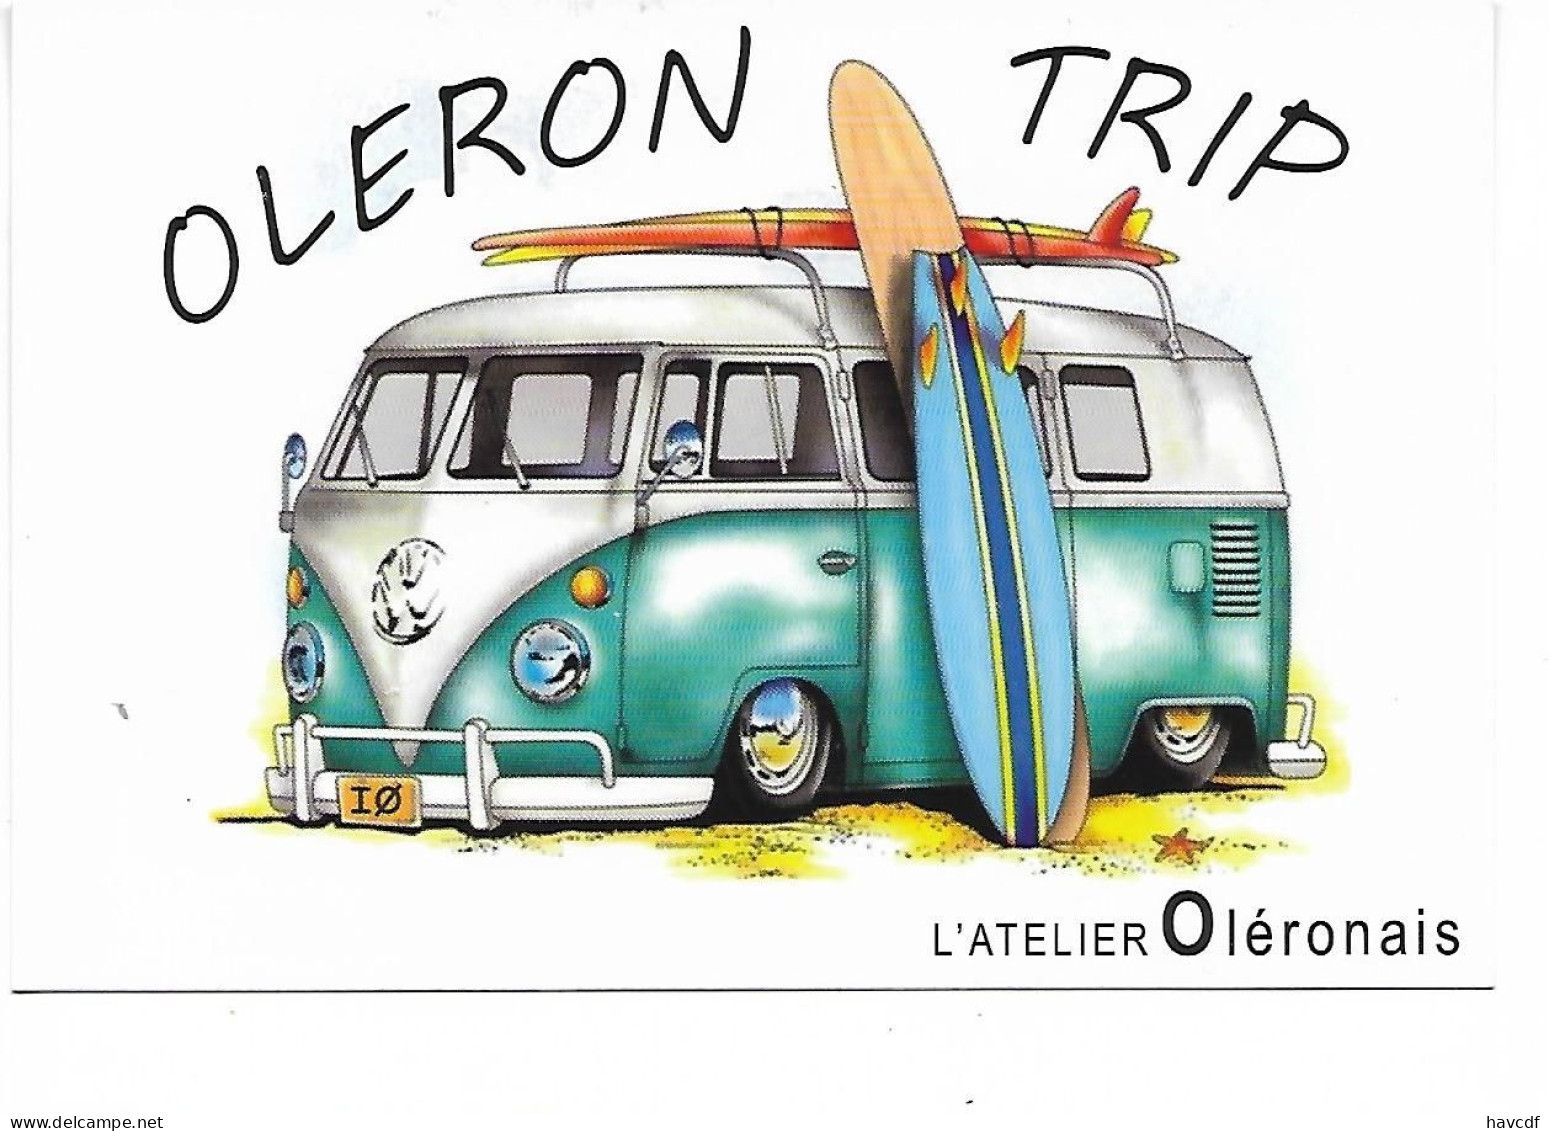 CPM - édit. L'Atelier Oléronais - OLERON TRIP - Combi Volkswagen, Surf - Toerisme